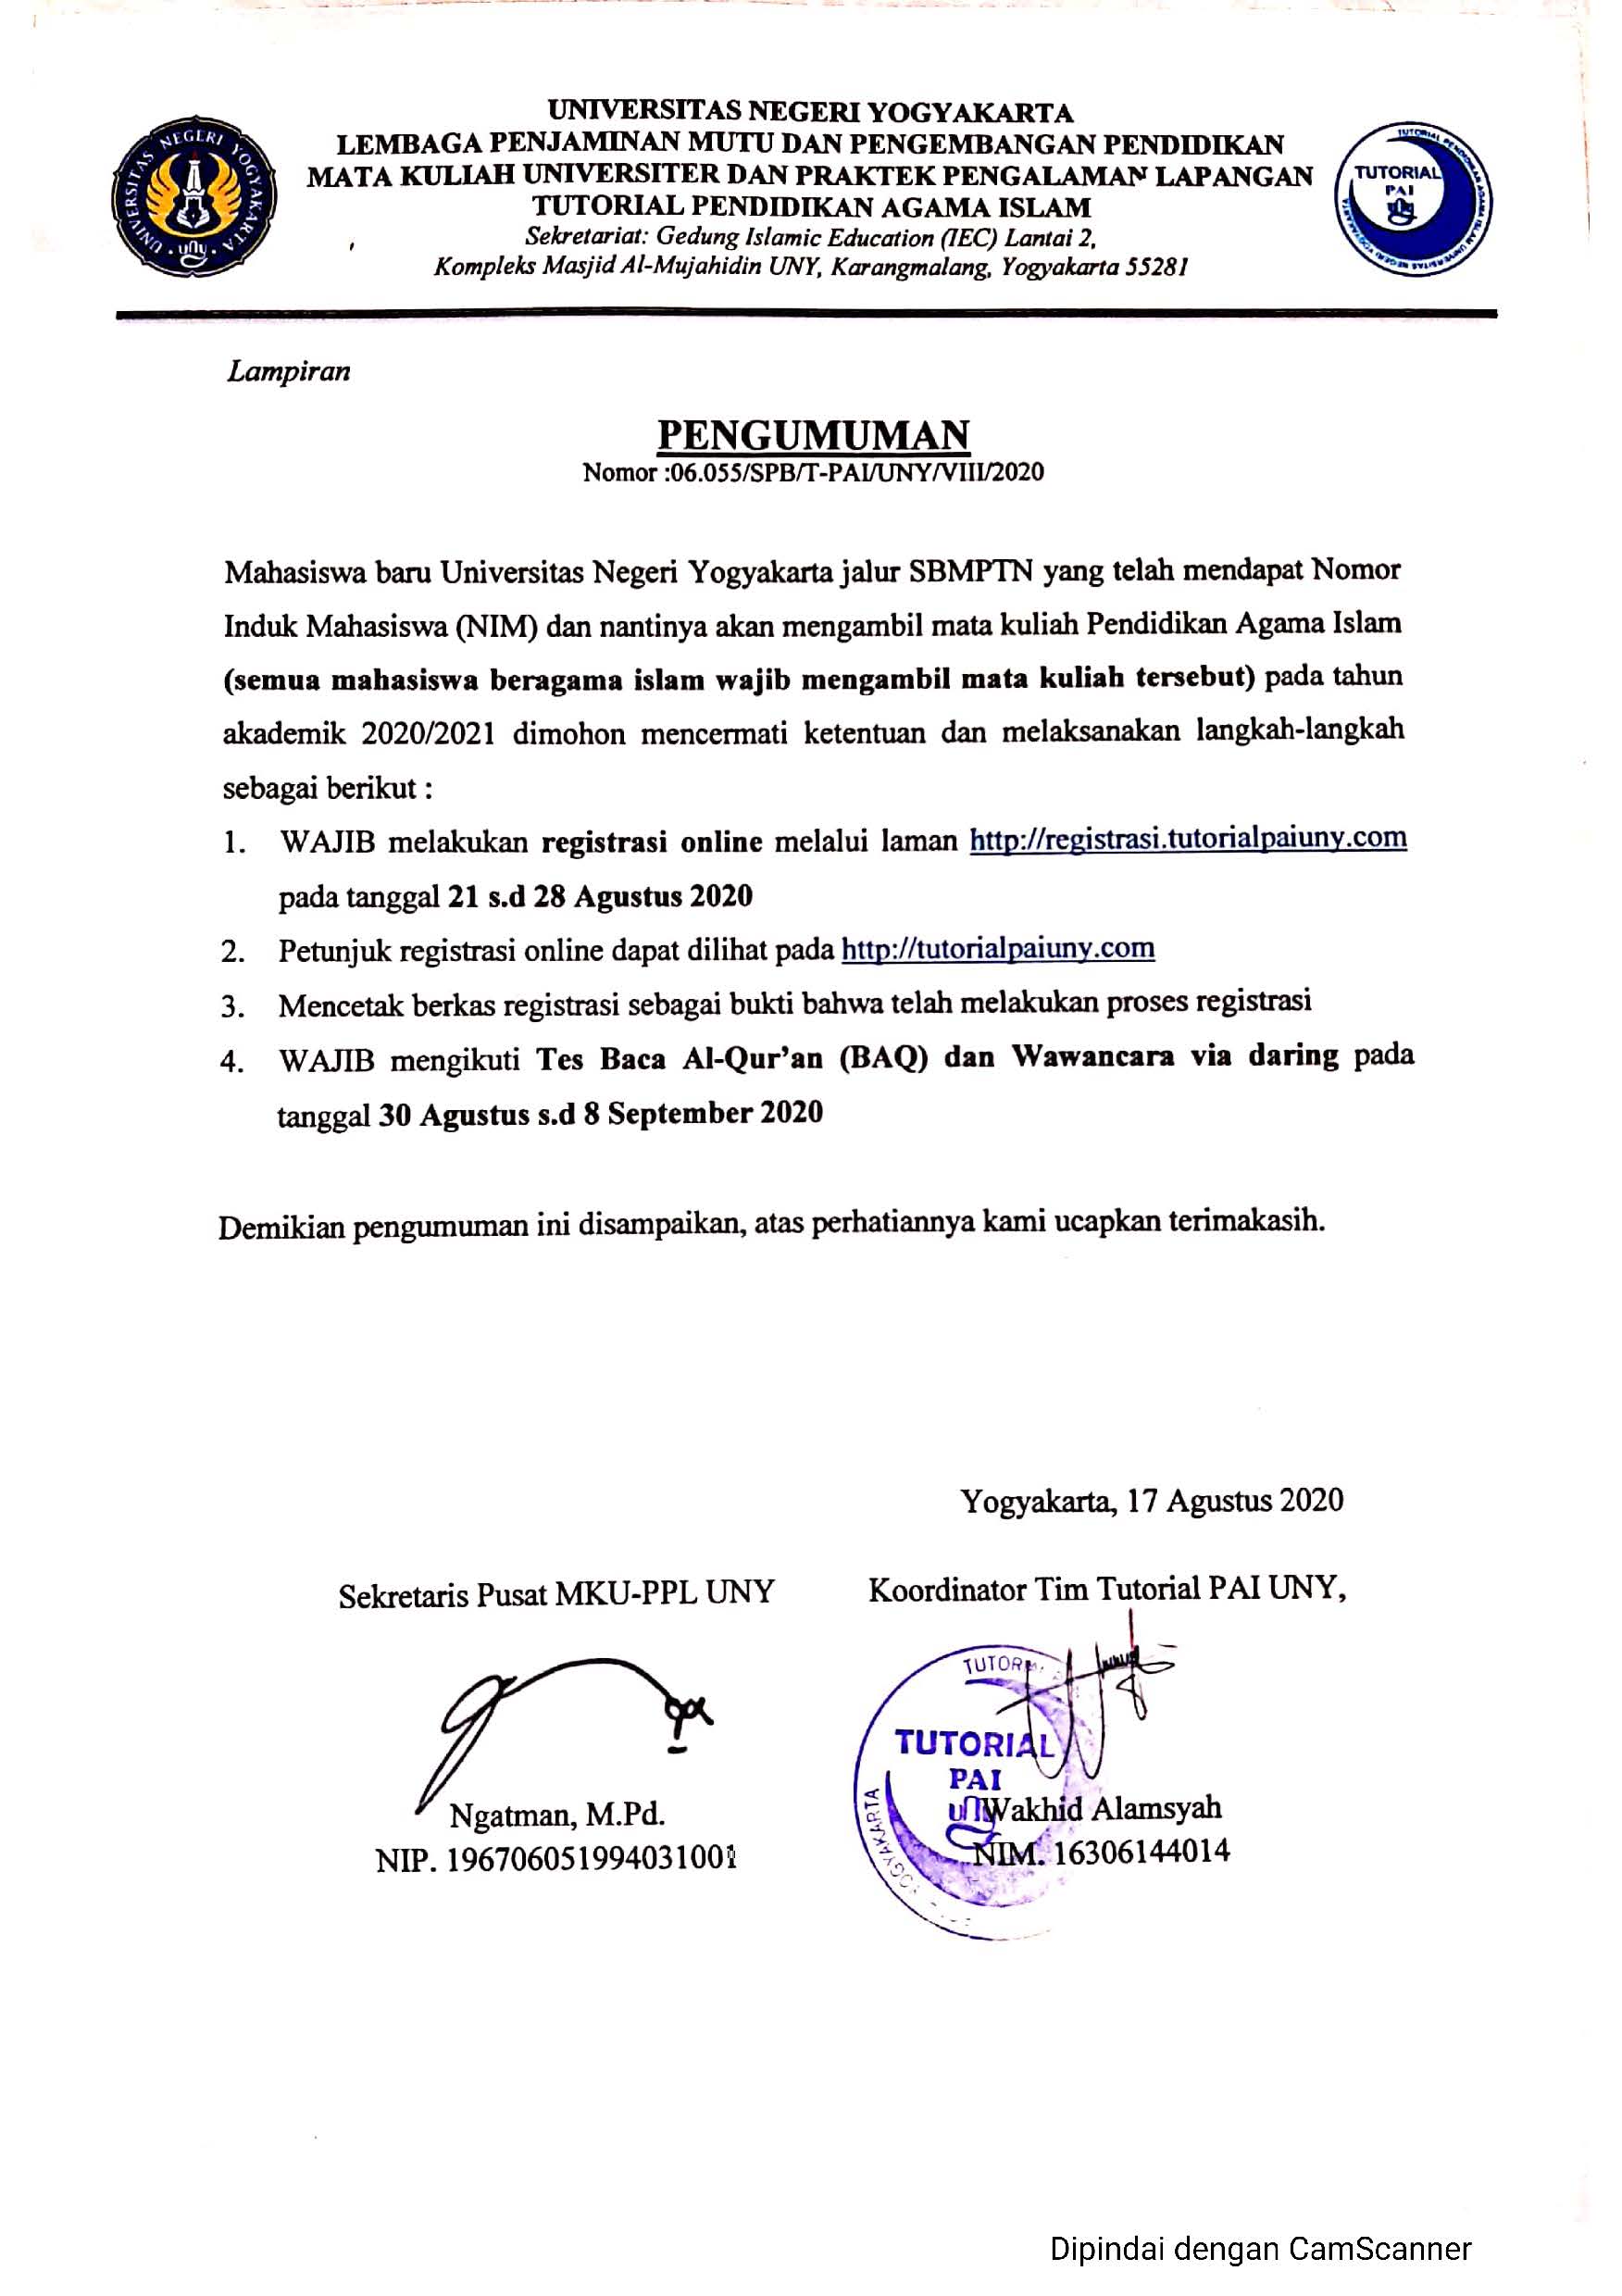 PENDAFTARAN TUTORIAL PENDIDIKAN AGAMA ISLAM BAGI MAHASISWA BARU JALUR SBMPTN 2020